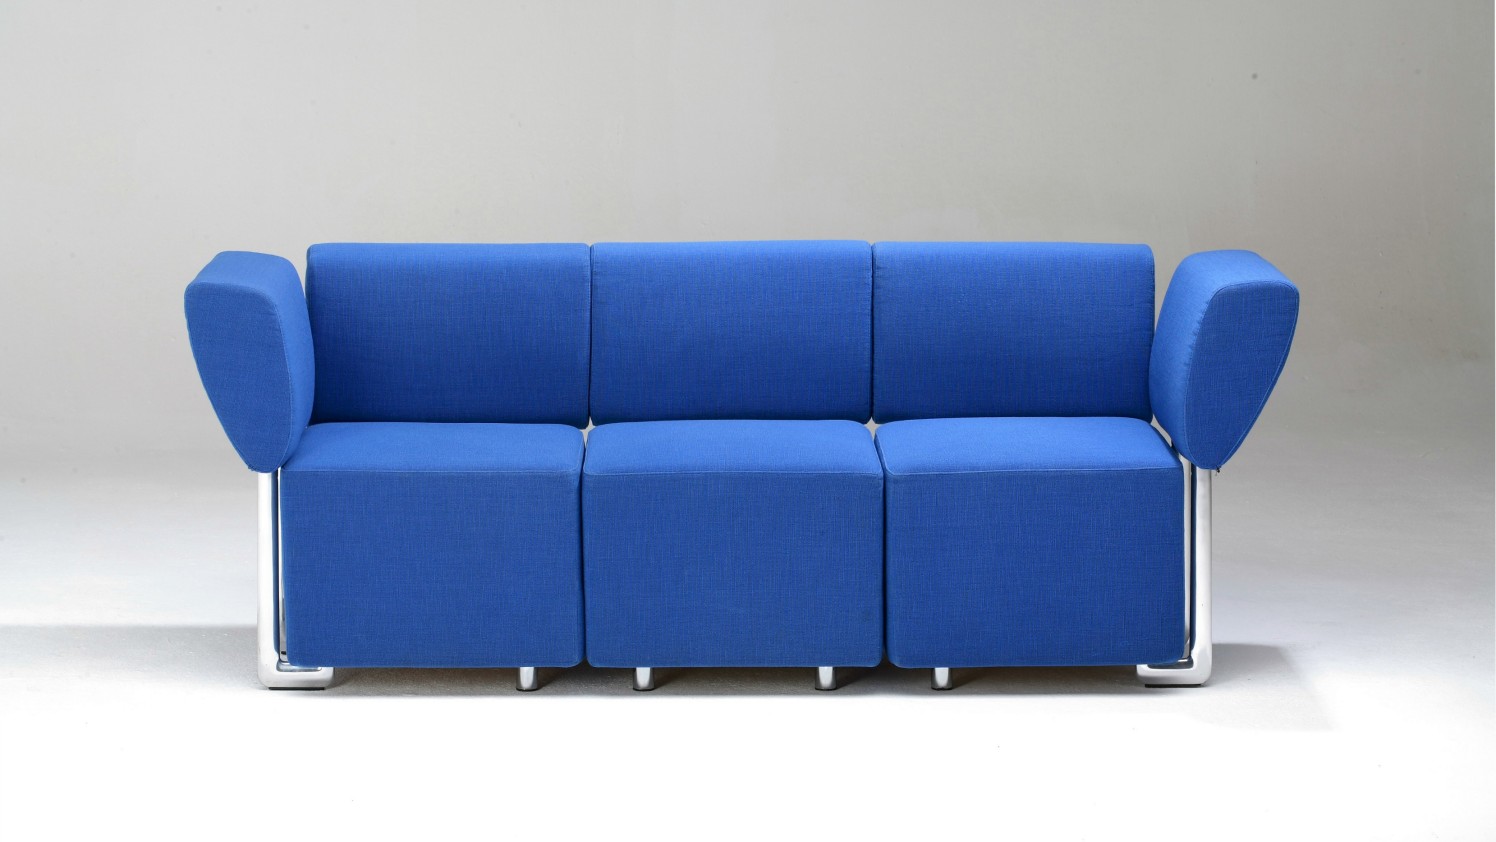 Das Blaue Sofa The Blue Sofa Bertelsmann Se Co Kgaa